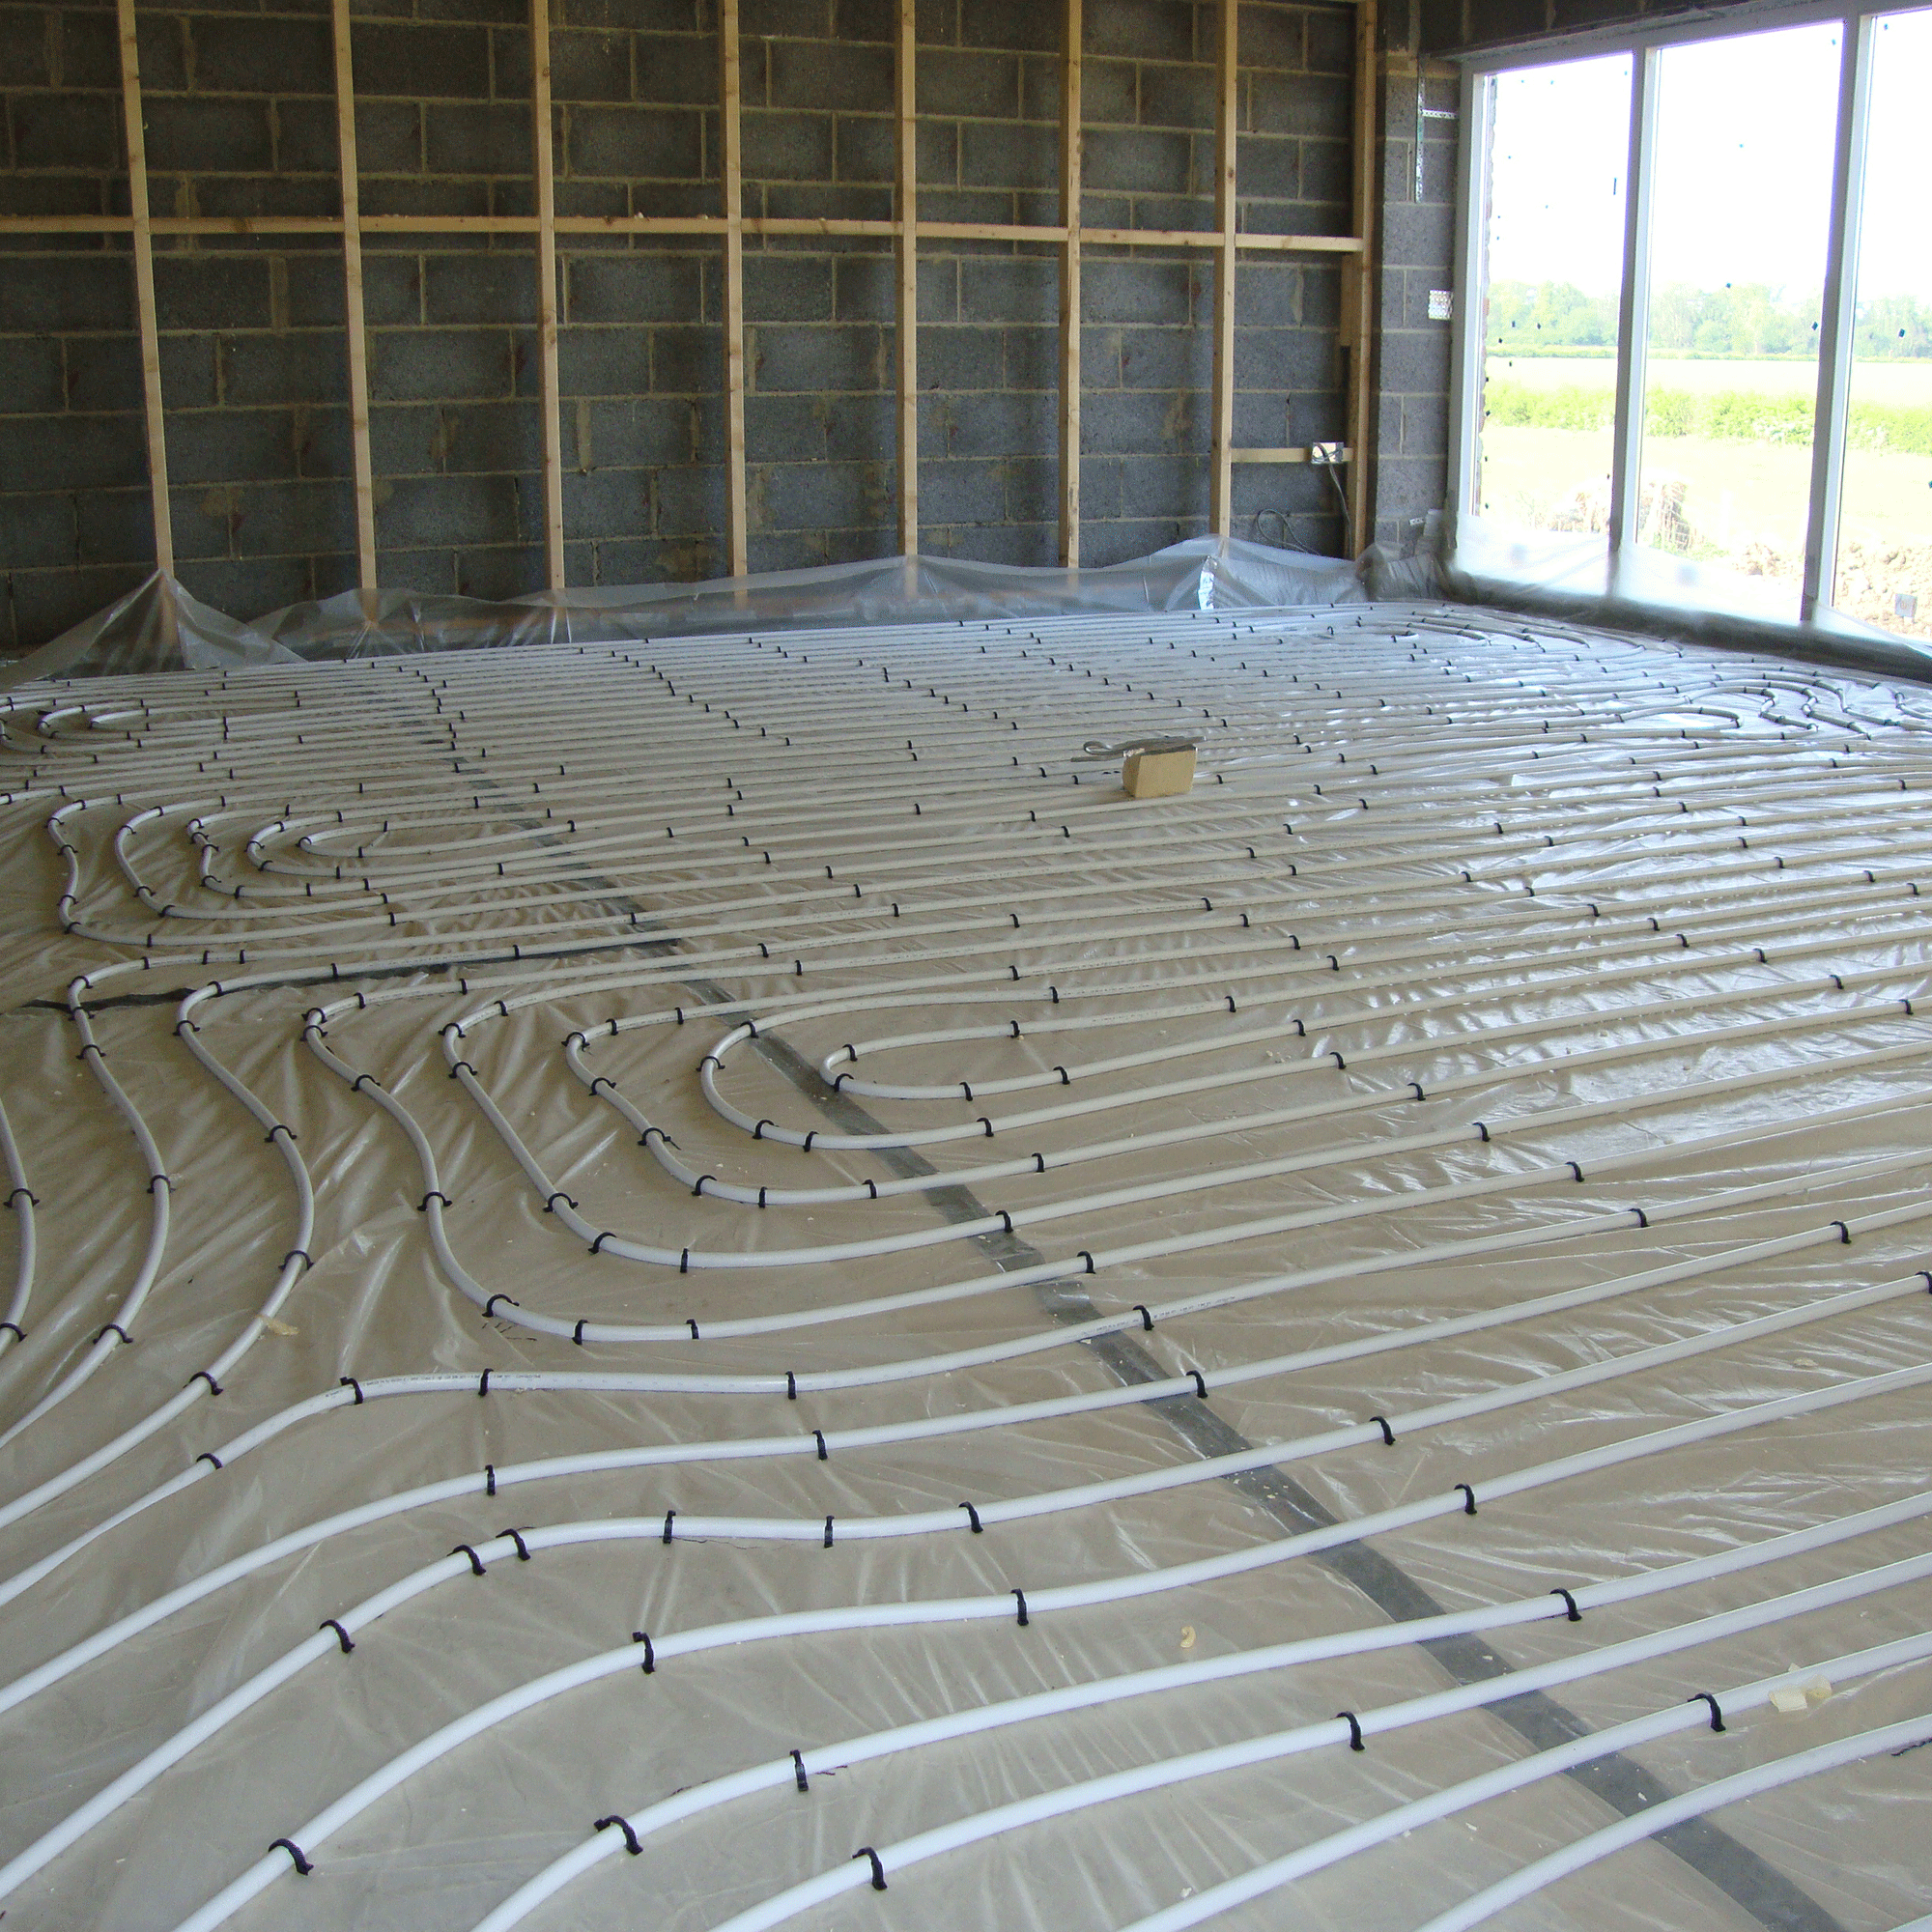 Ground source heat pump underfloor heating